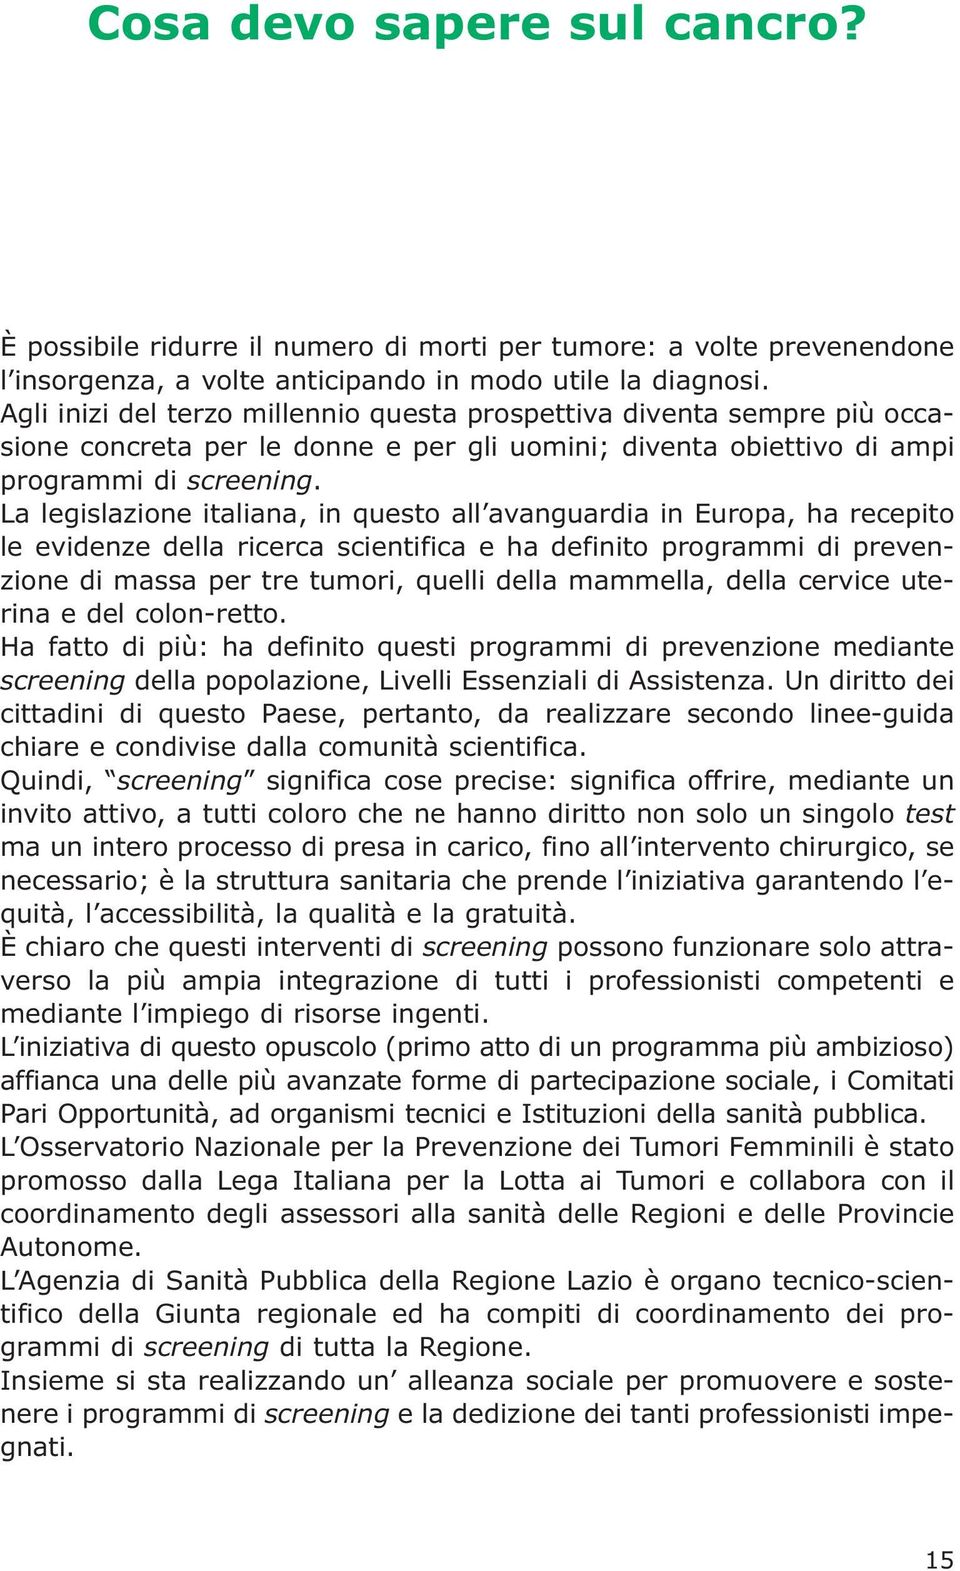 La legislazione italiana, in questo all avanguardia in Europa, ha recepito le evidenze della ricerca scientifica e ha definito programmi di prevenzione di massa per tre tumori, quelli della mammella,